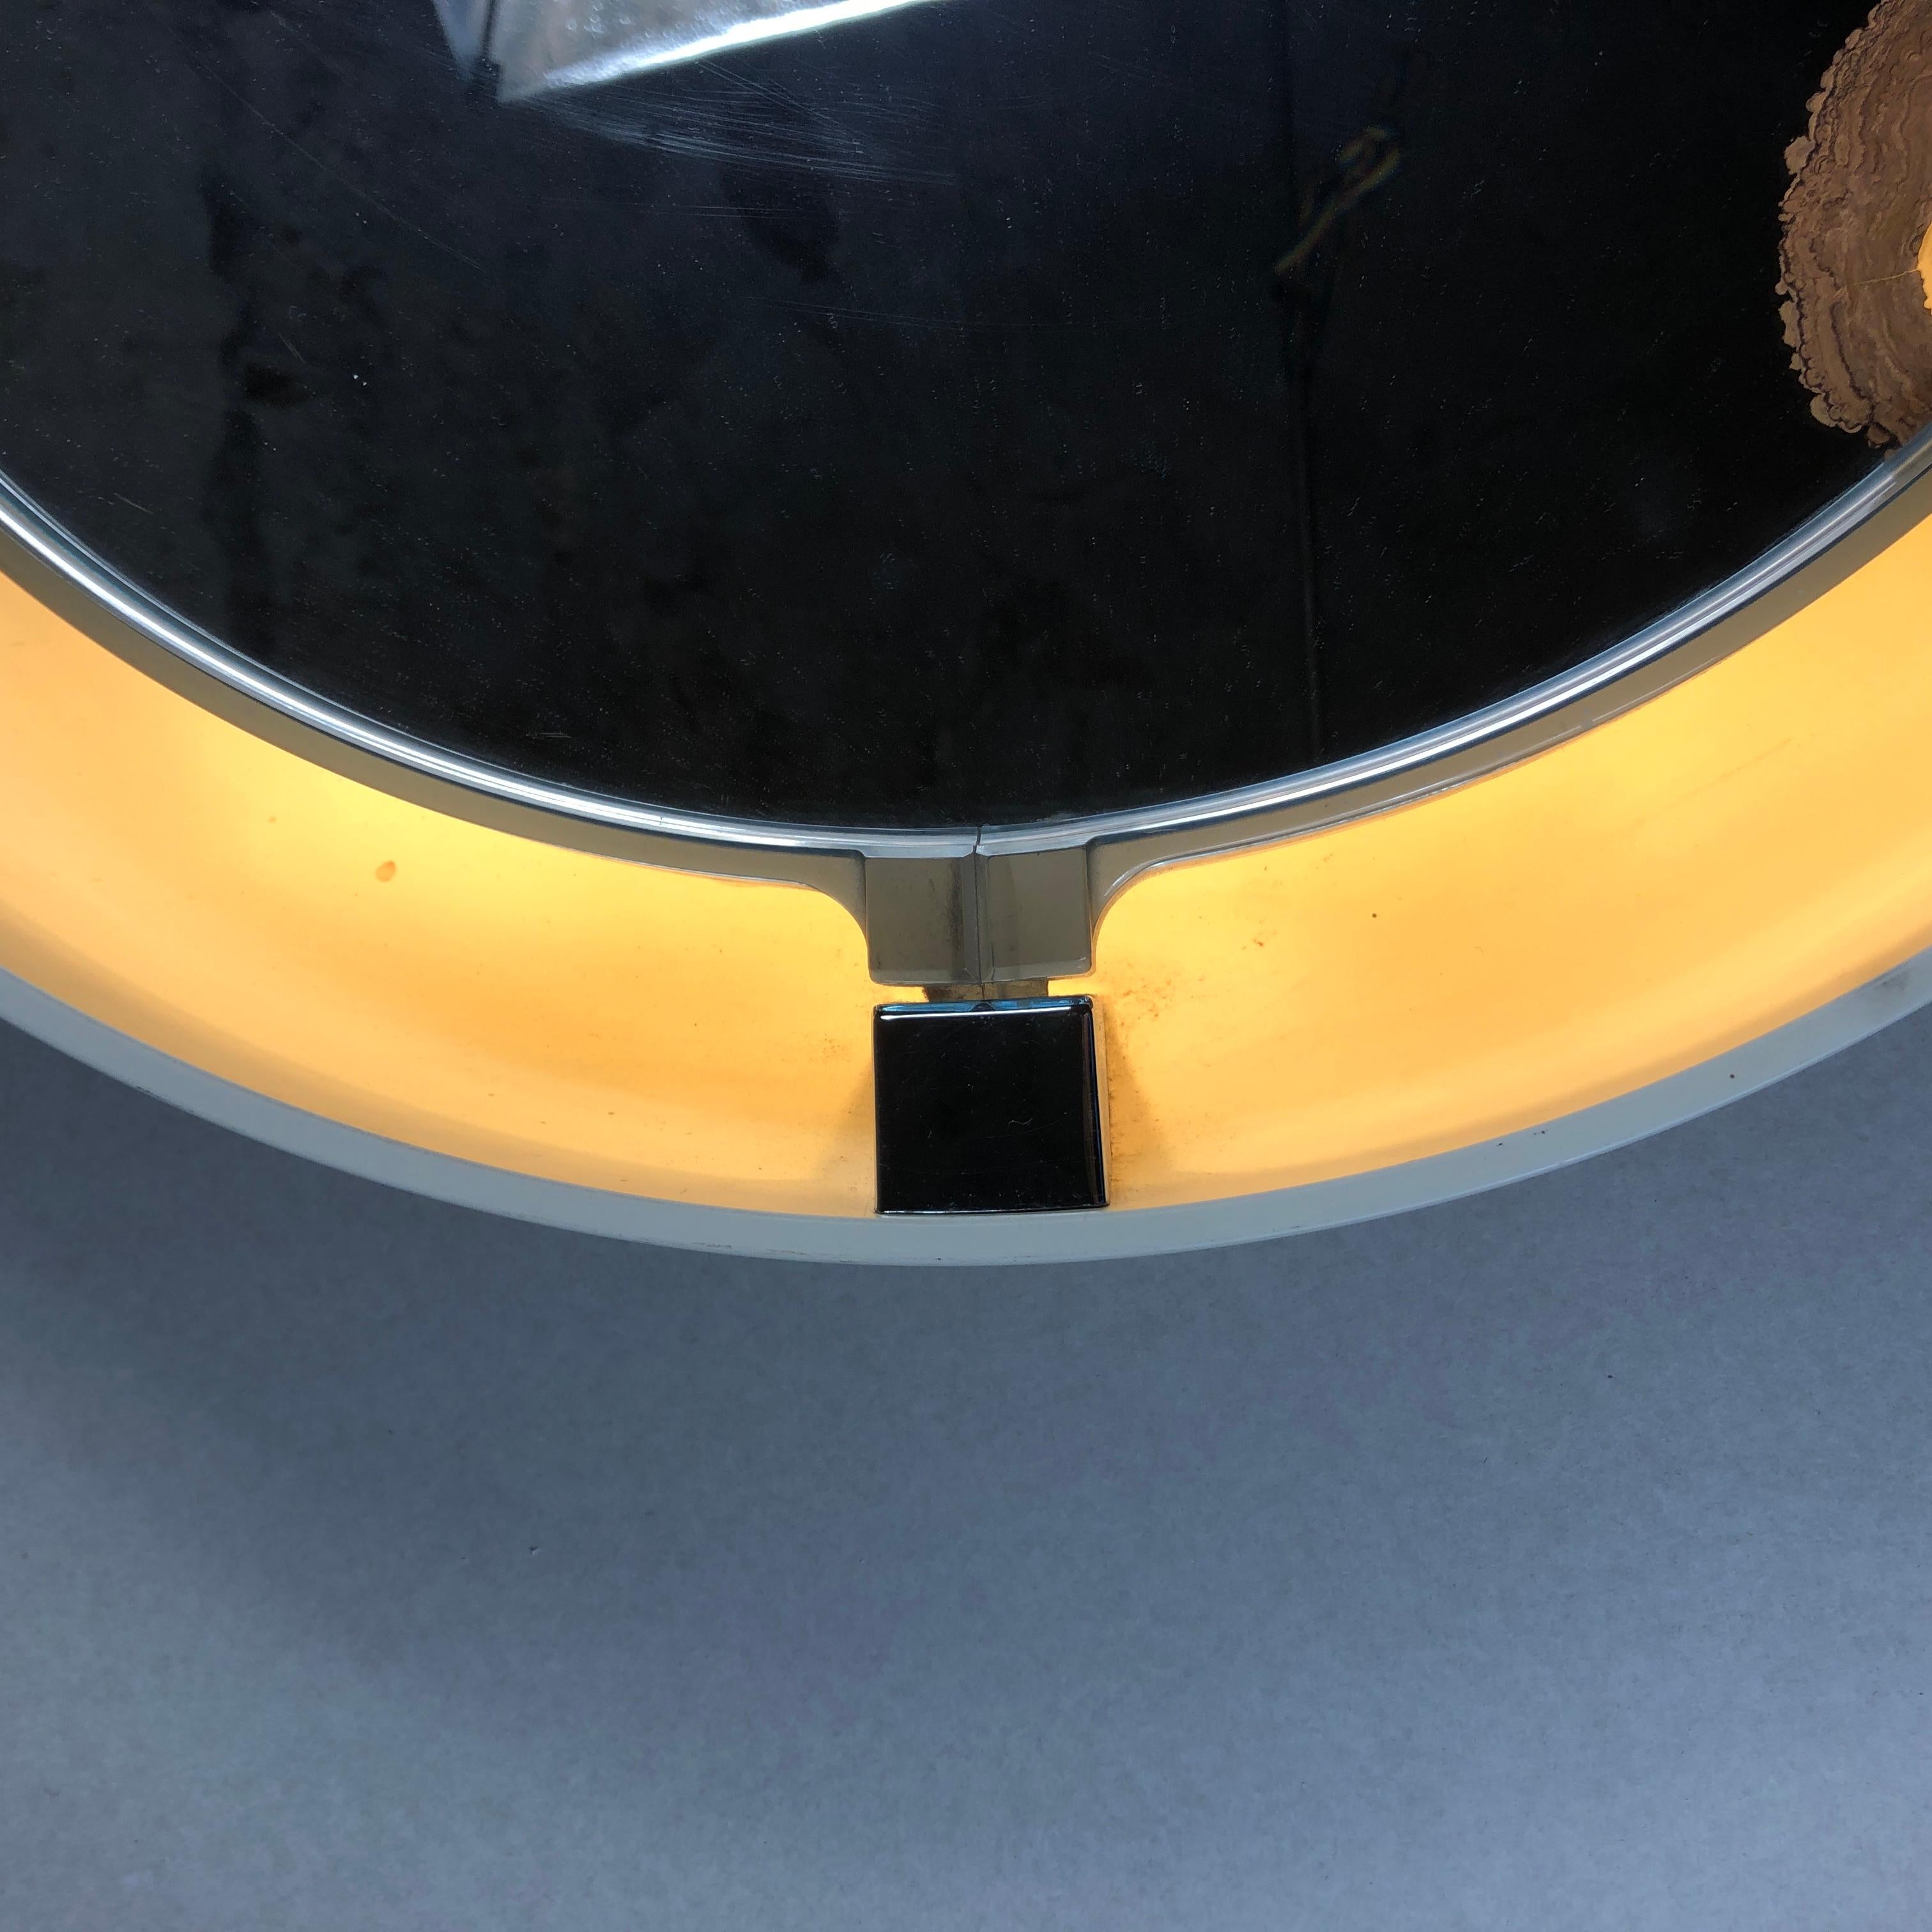 Prächtiger Spiegel im Vintage-Design mit Licht.
Entworfen von allibert.
Der Spiegel wurde in den 1970er Jahren in Deutschland hergestellt.

Der Spiegel hat die Form eines Kreises und besteht aus Kunststoff. Farbe: Beige 

Der Spiegel kann sowohl in